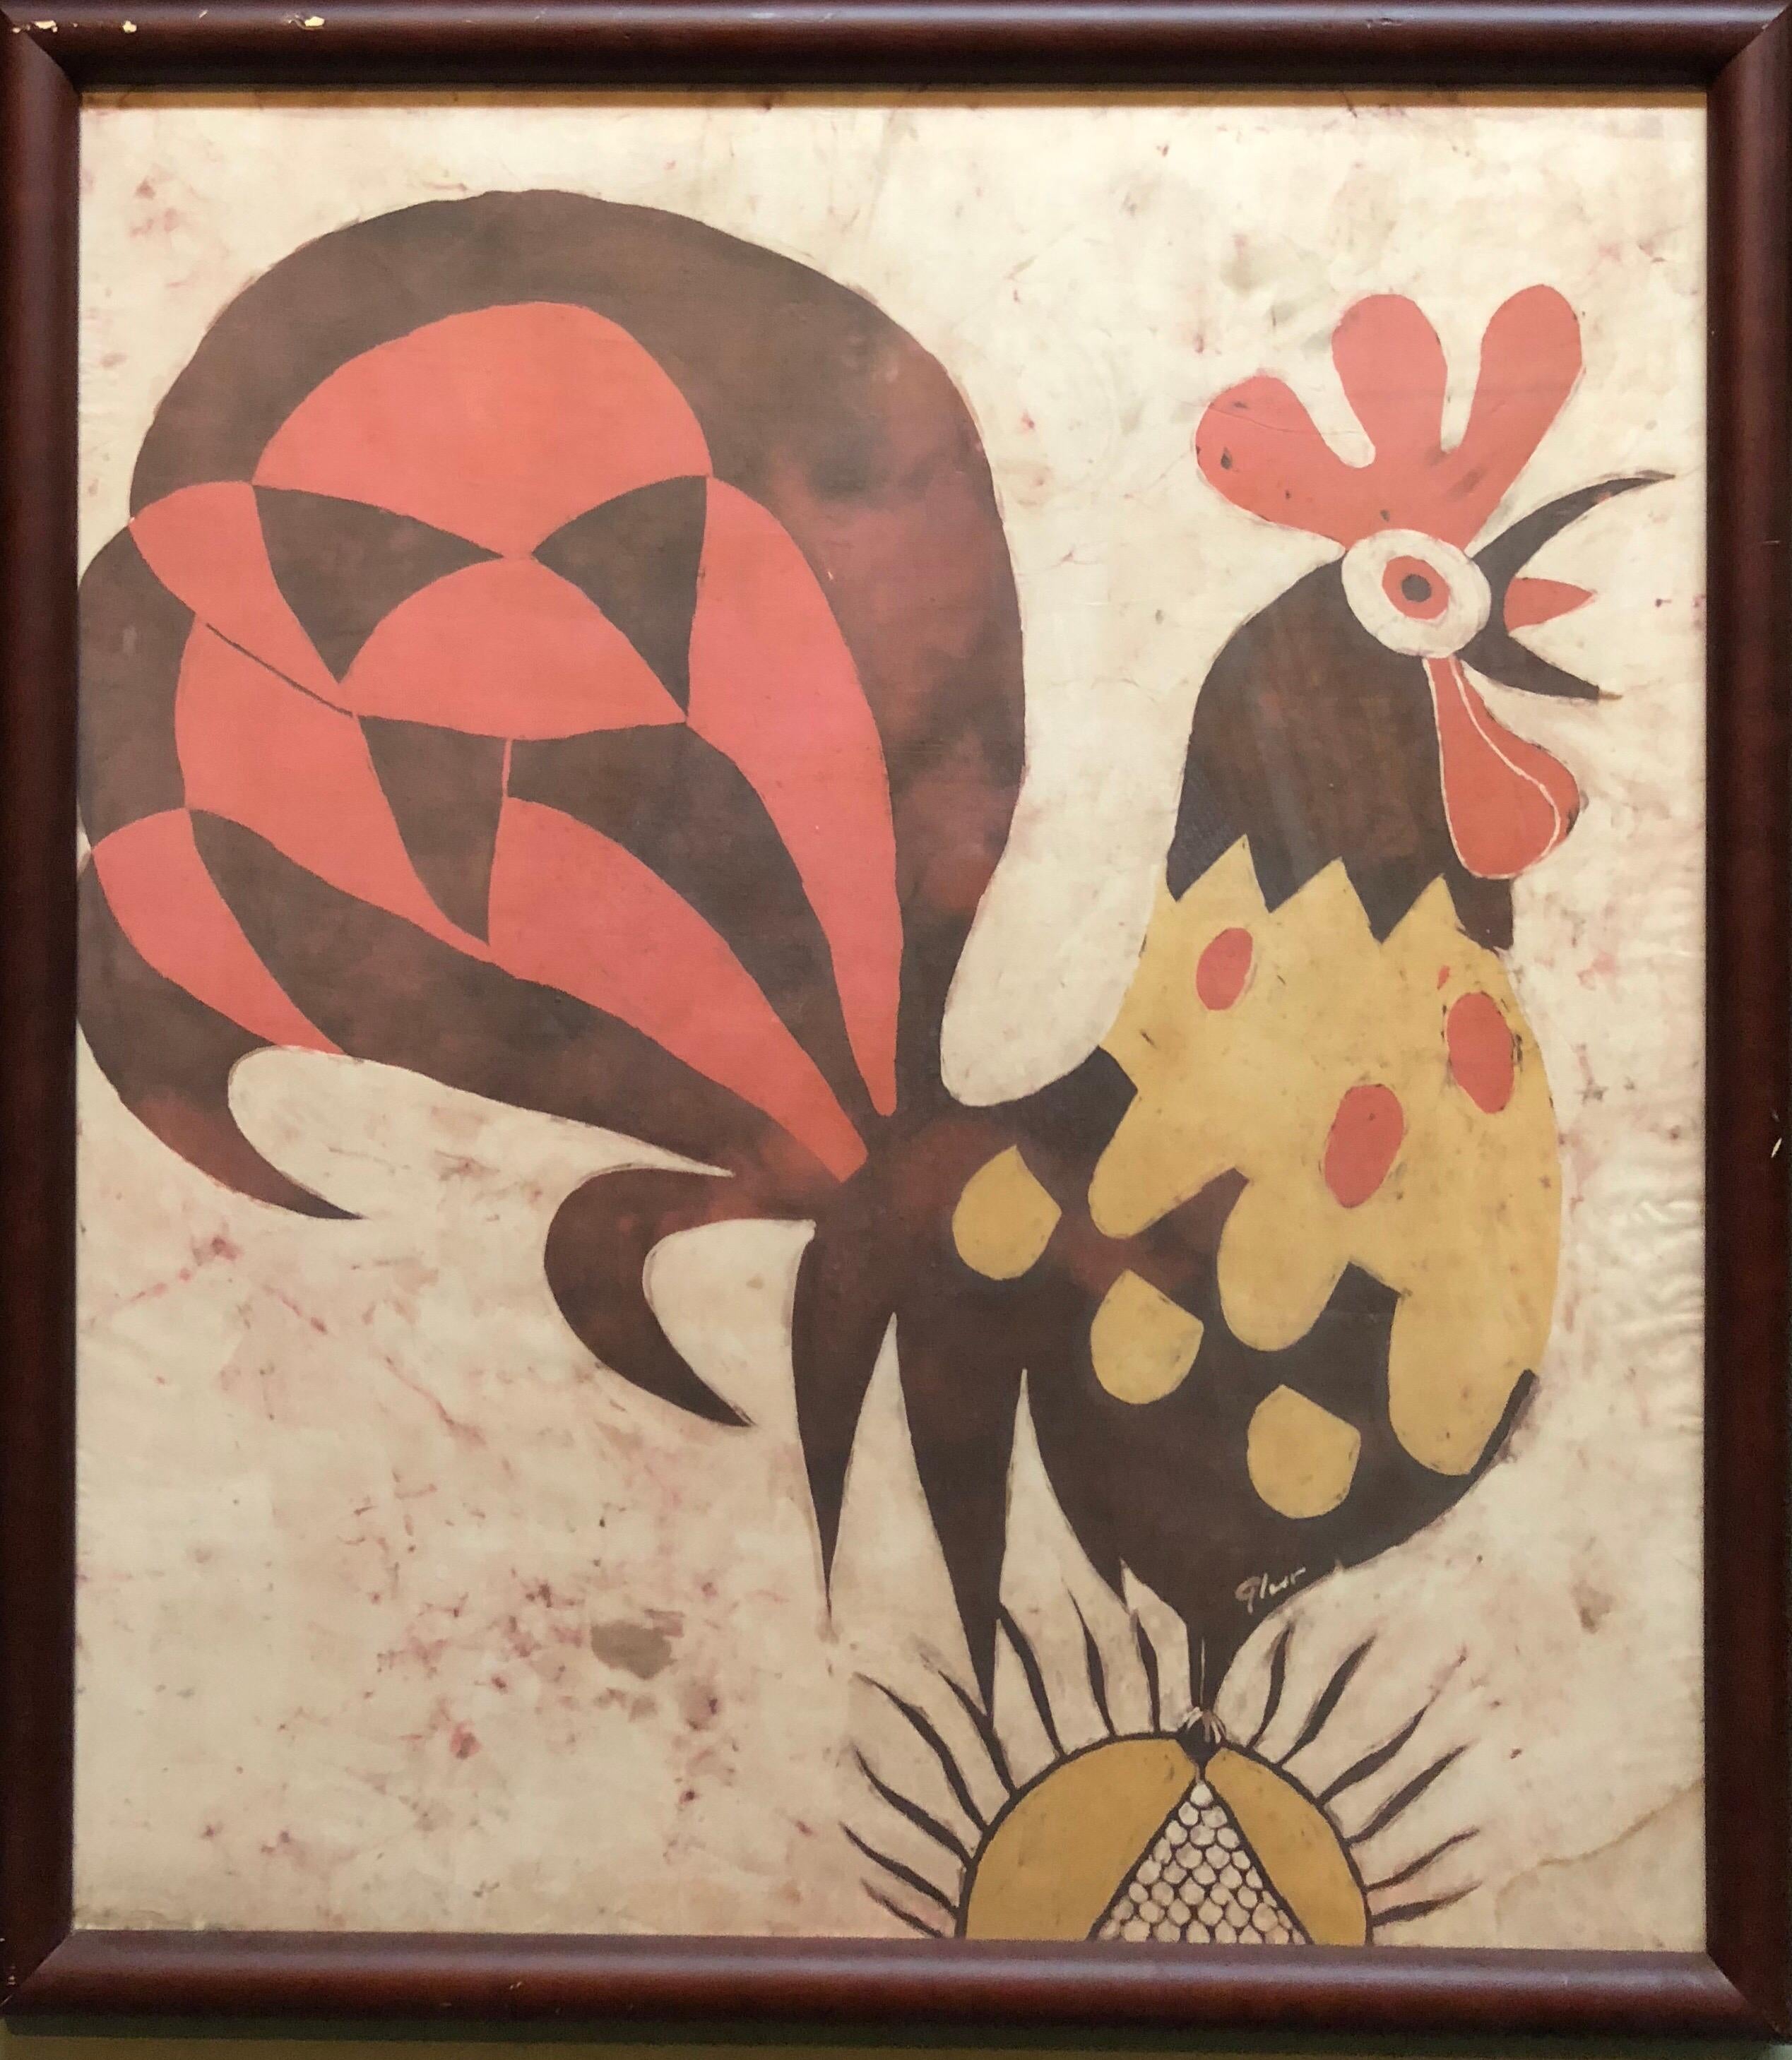 Deutscher israelischer expressionistischer „Rooster“ Gemäldedruck im Batik-Stil auf Seidenstoff (Expressionismus), Mixed Media Art, von Jacob Pins